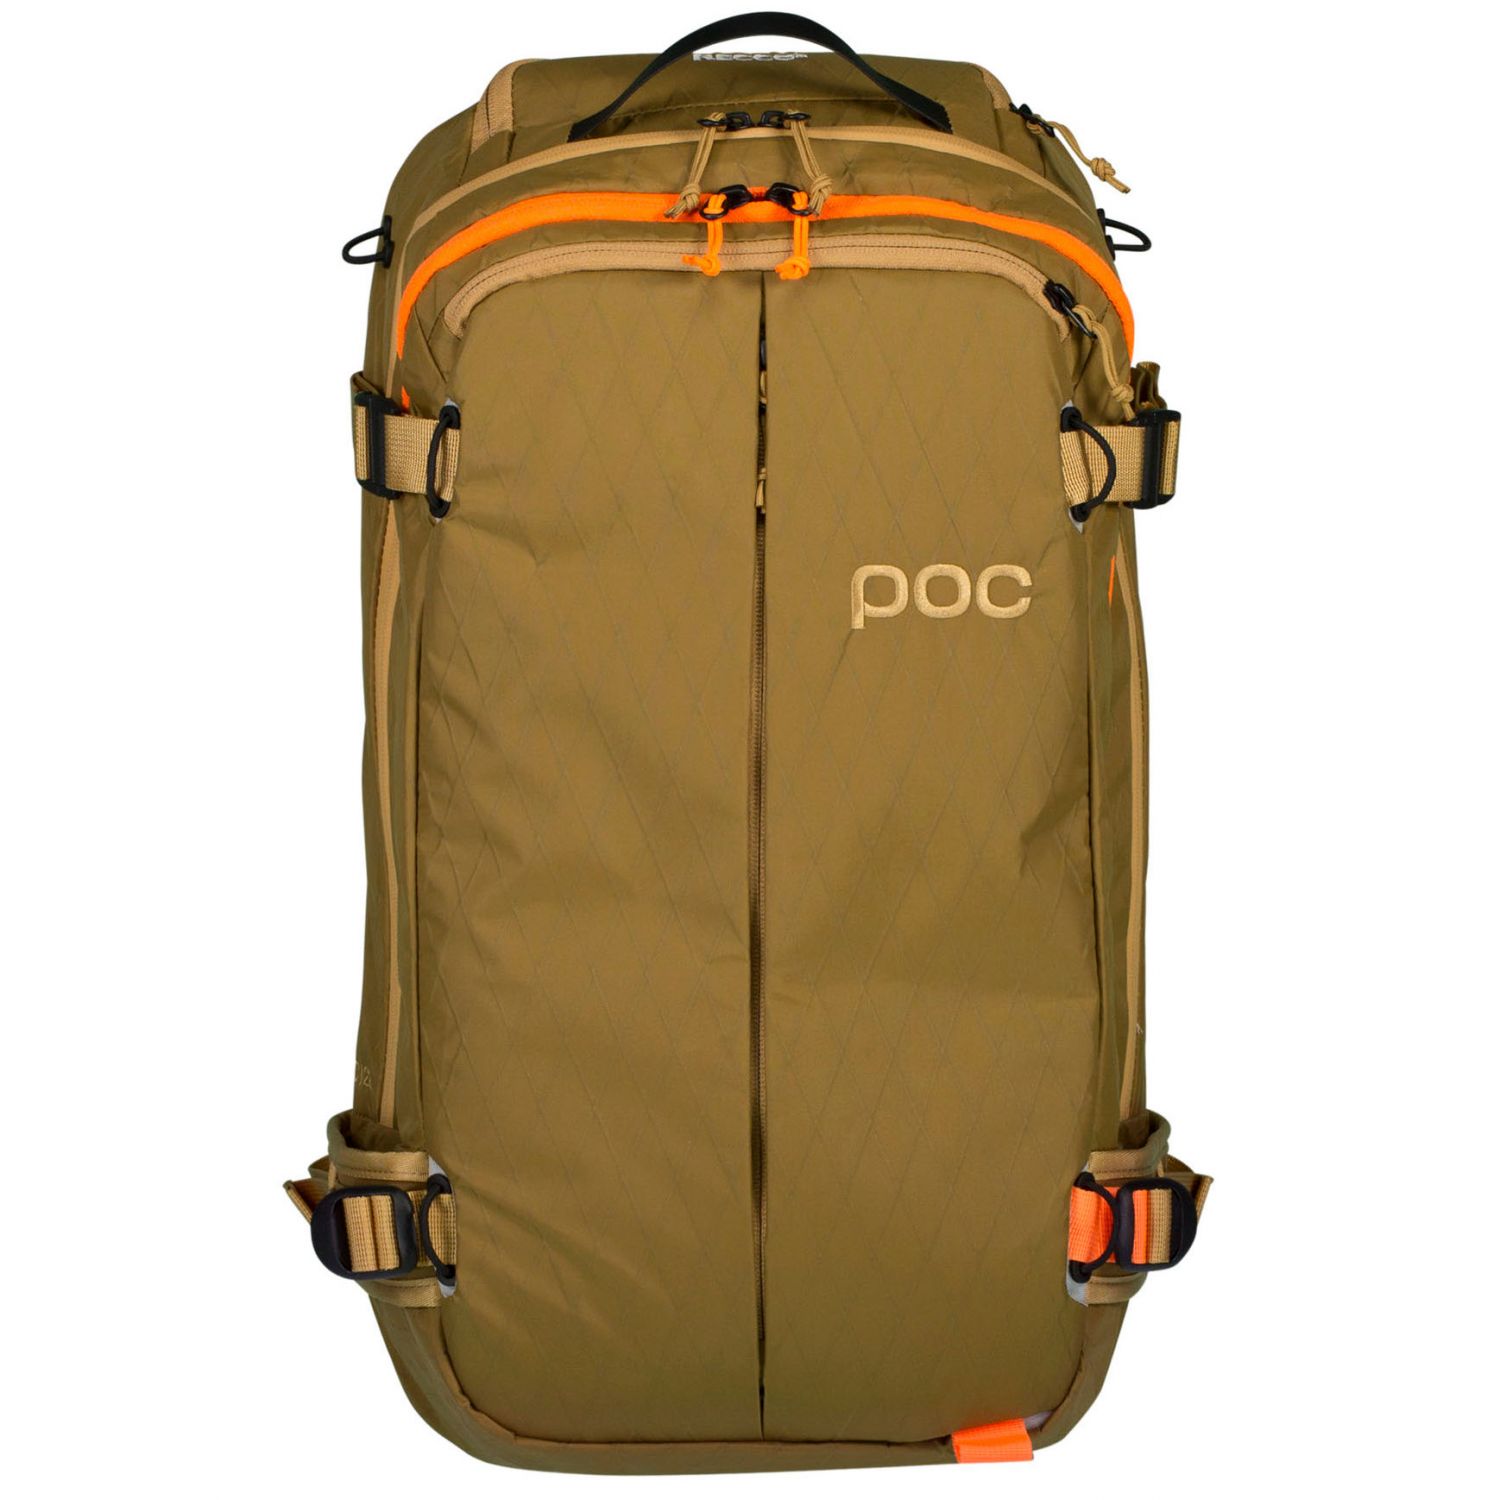 Se POC Dimension VPD Backpack, brun hos Skisport.dk